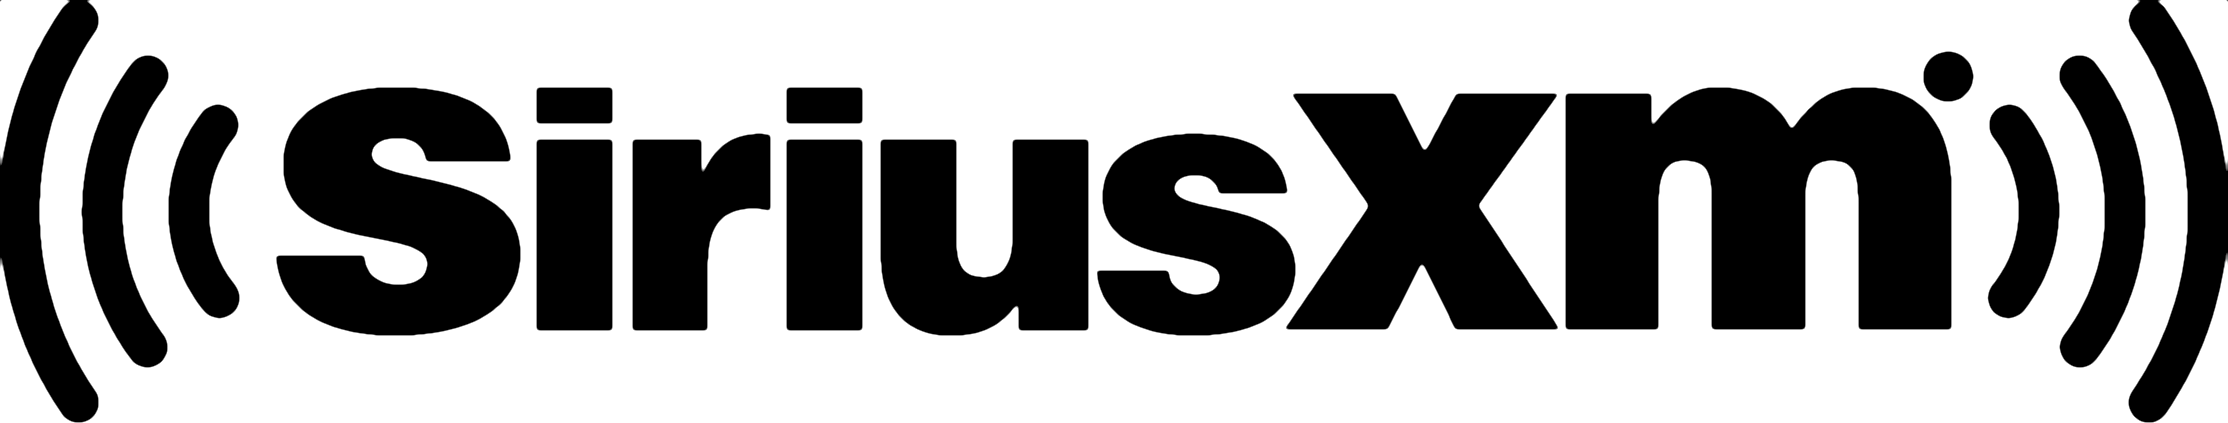 SiriusXM-logo.png